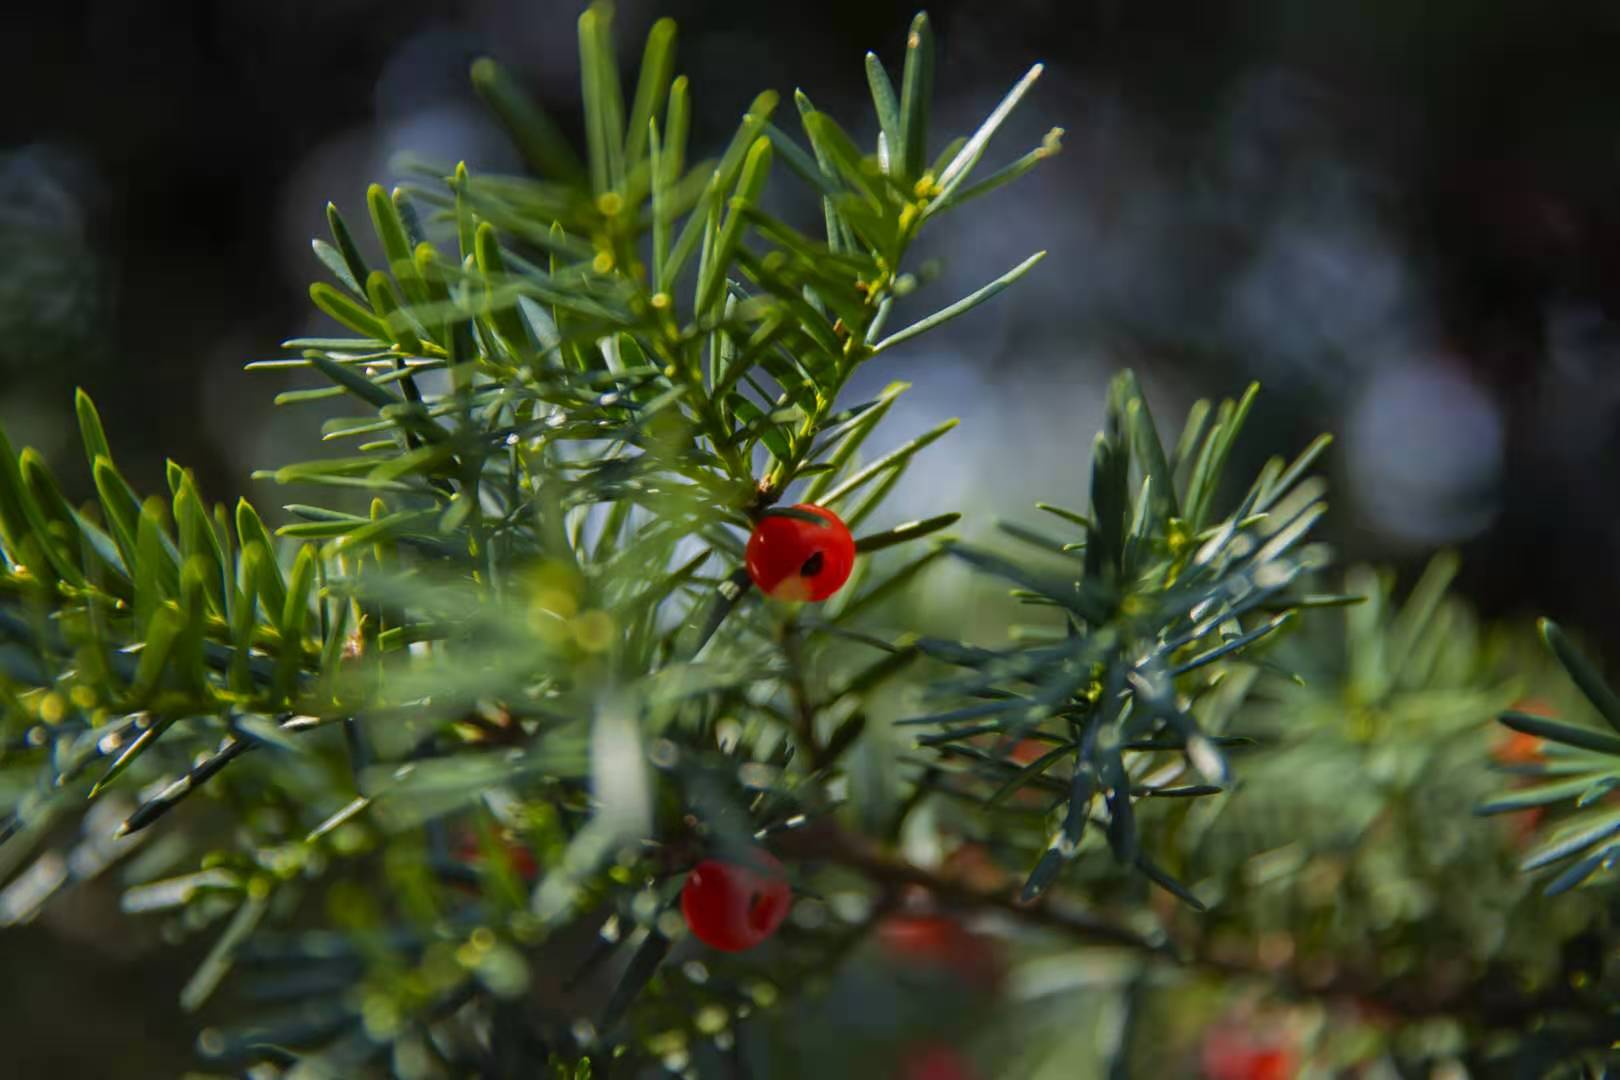 集多种开发利用价值于一体的濒危野生植物——南方红豆杉 - 知乎